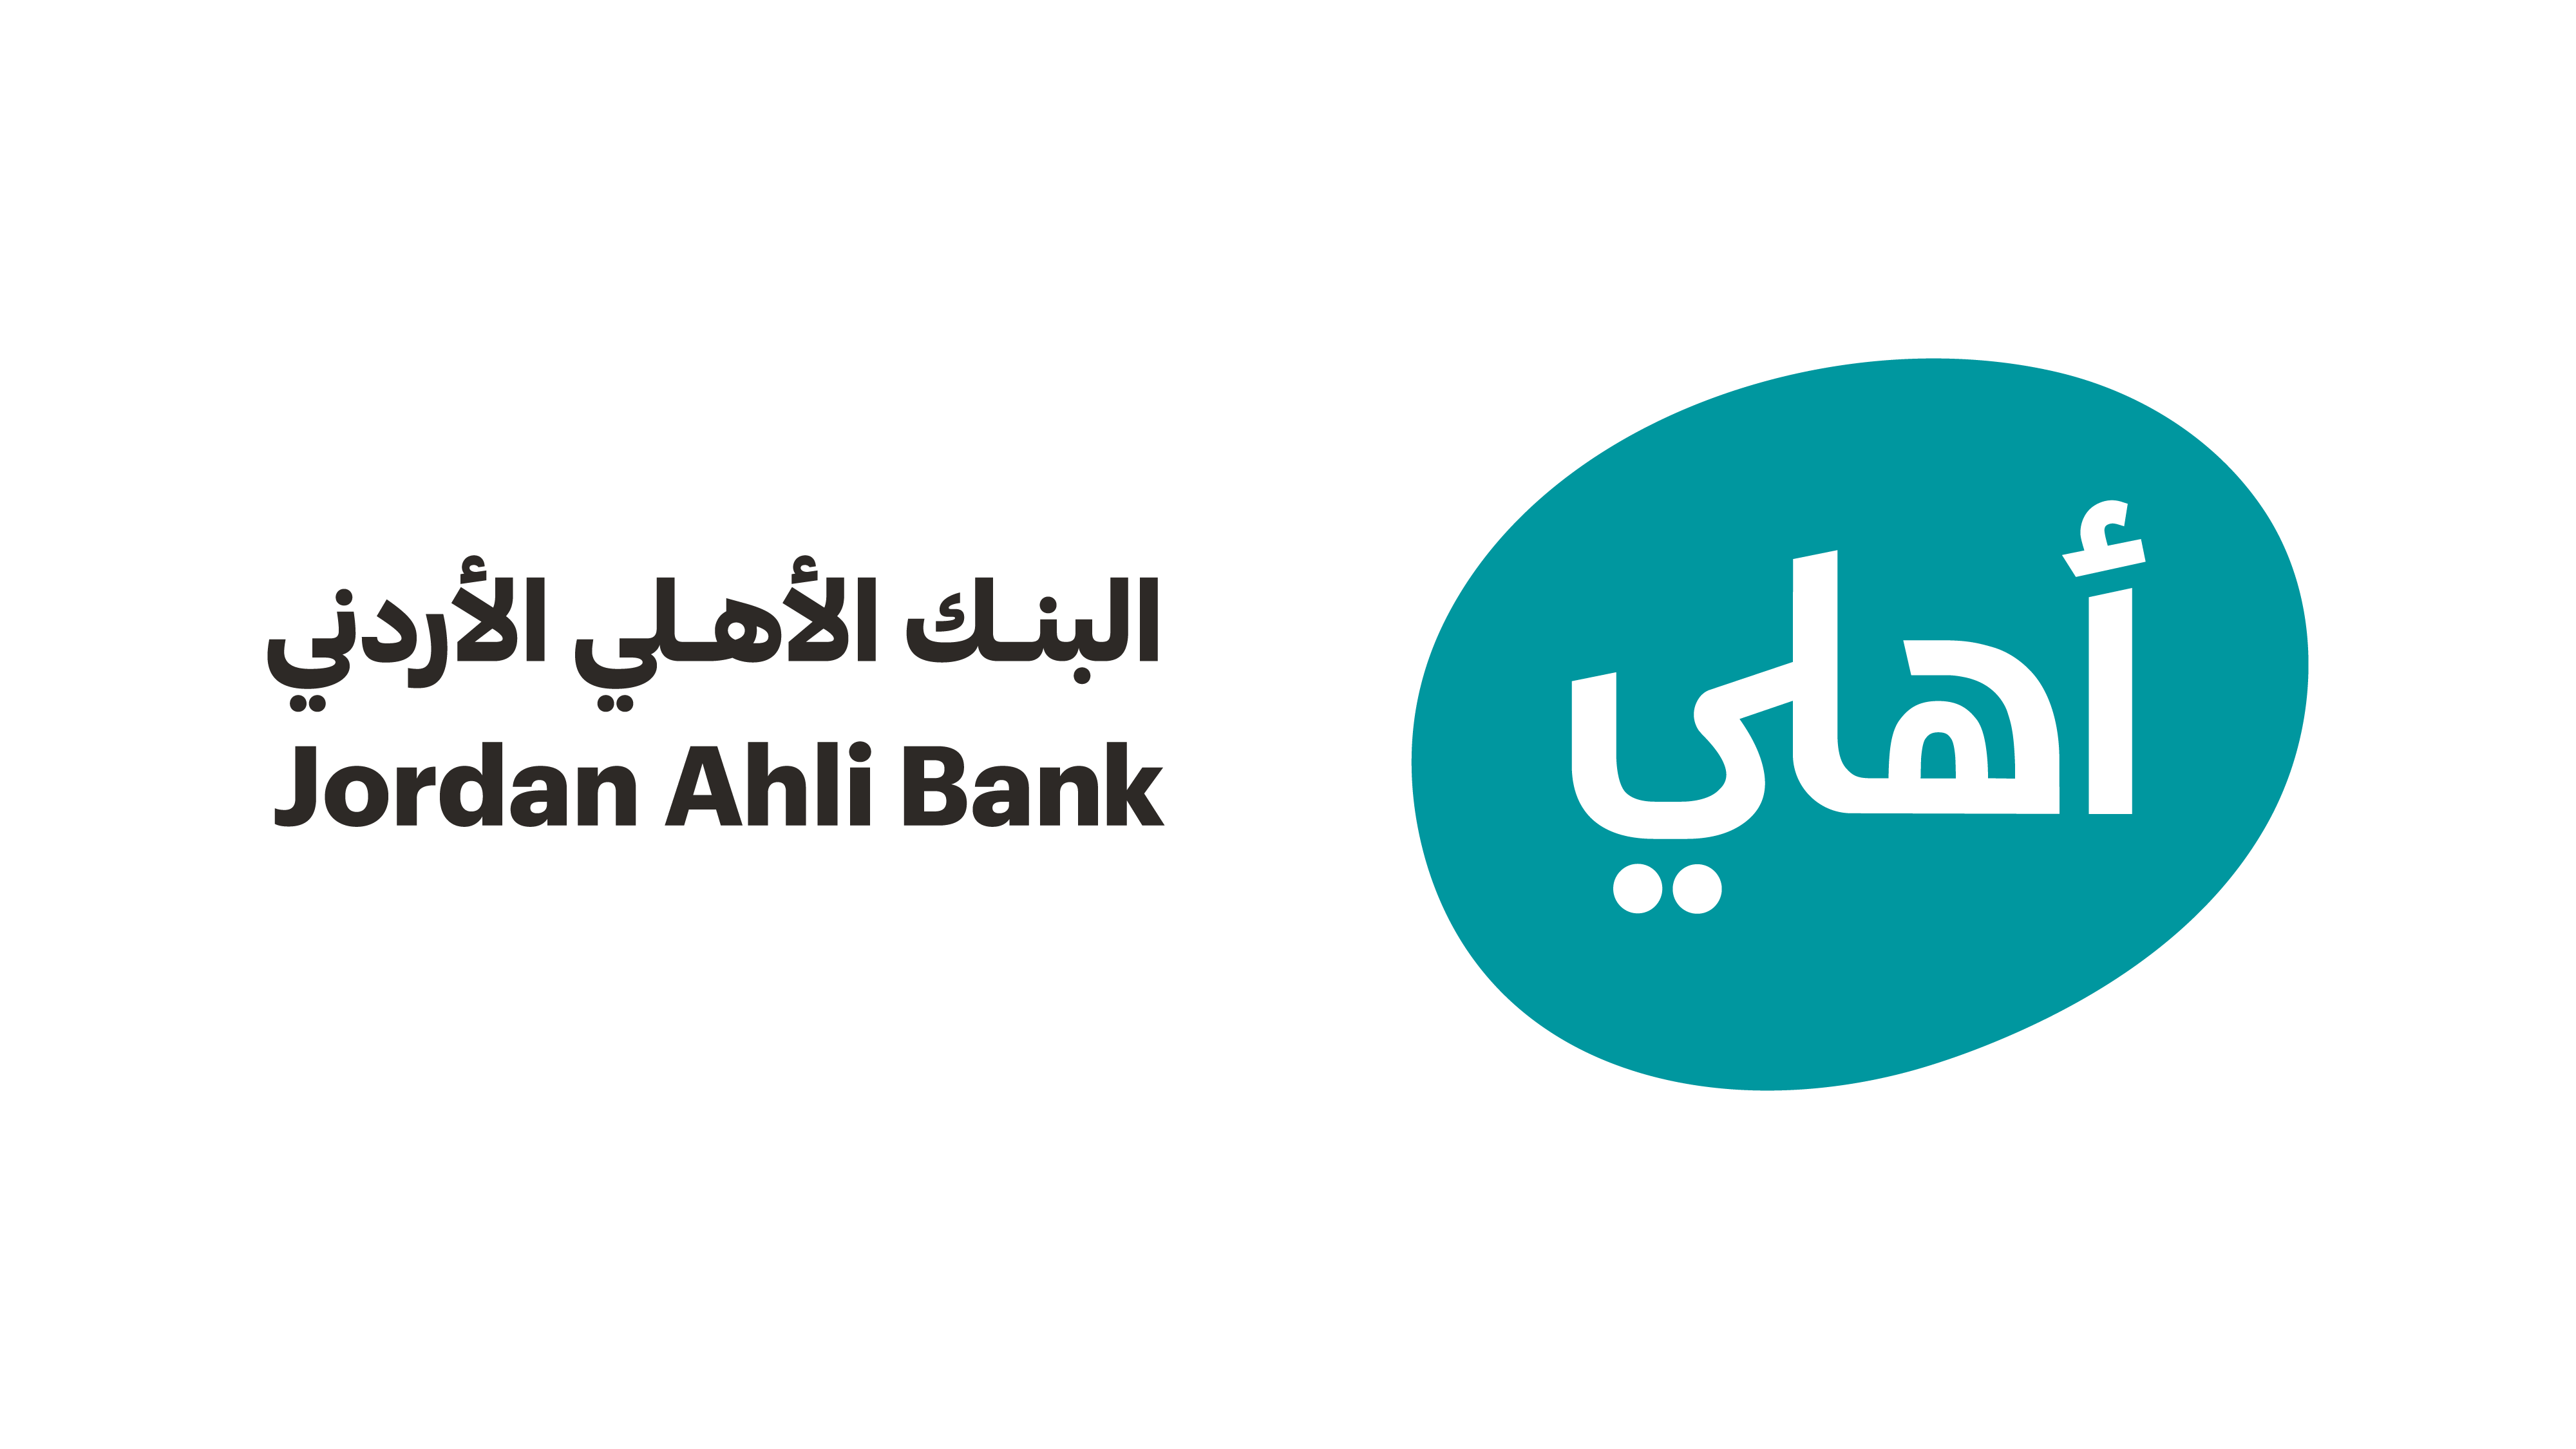 البنك الأهلي الأردني يوزع كسوة العيد بالتعاون مع بنك الملابس الخيري